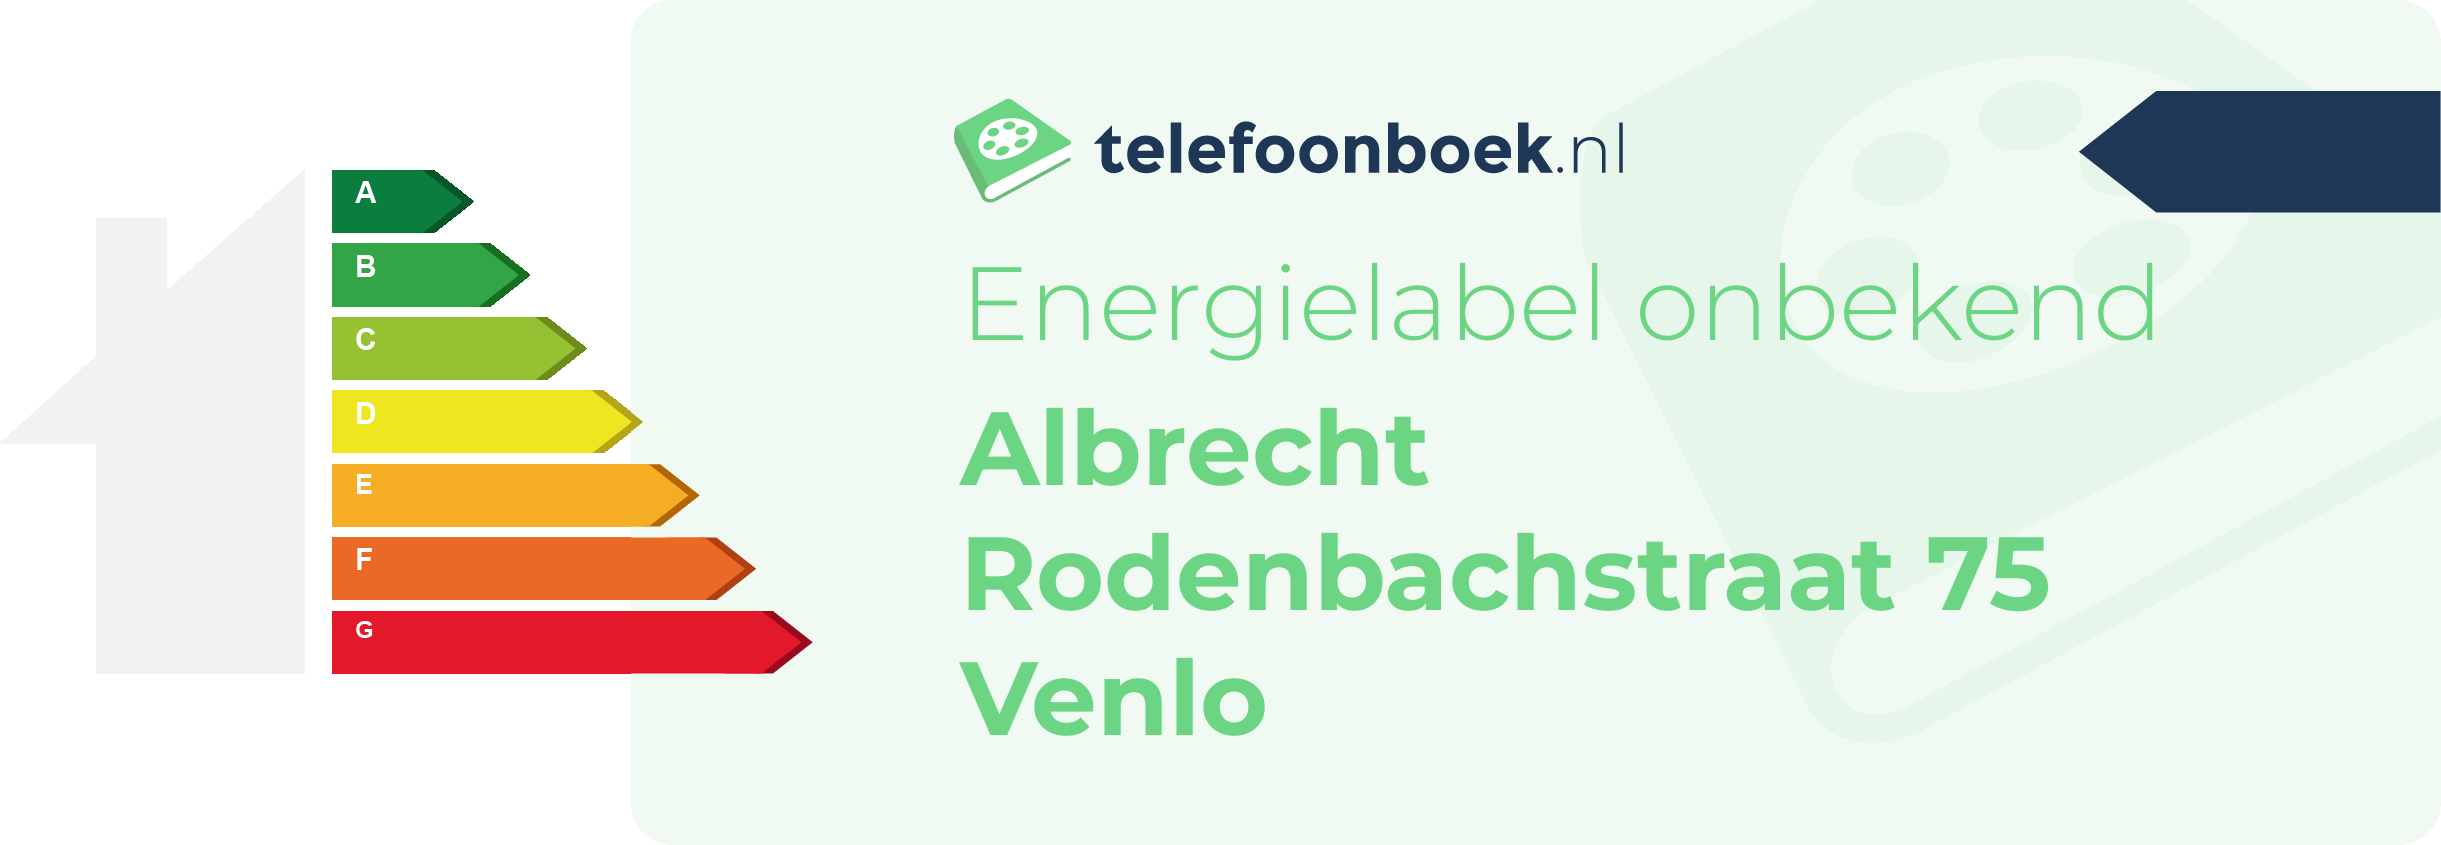 Energielabel Albrecht Rodenbachstraat 75 Venlo